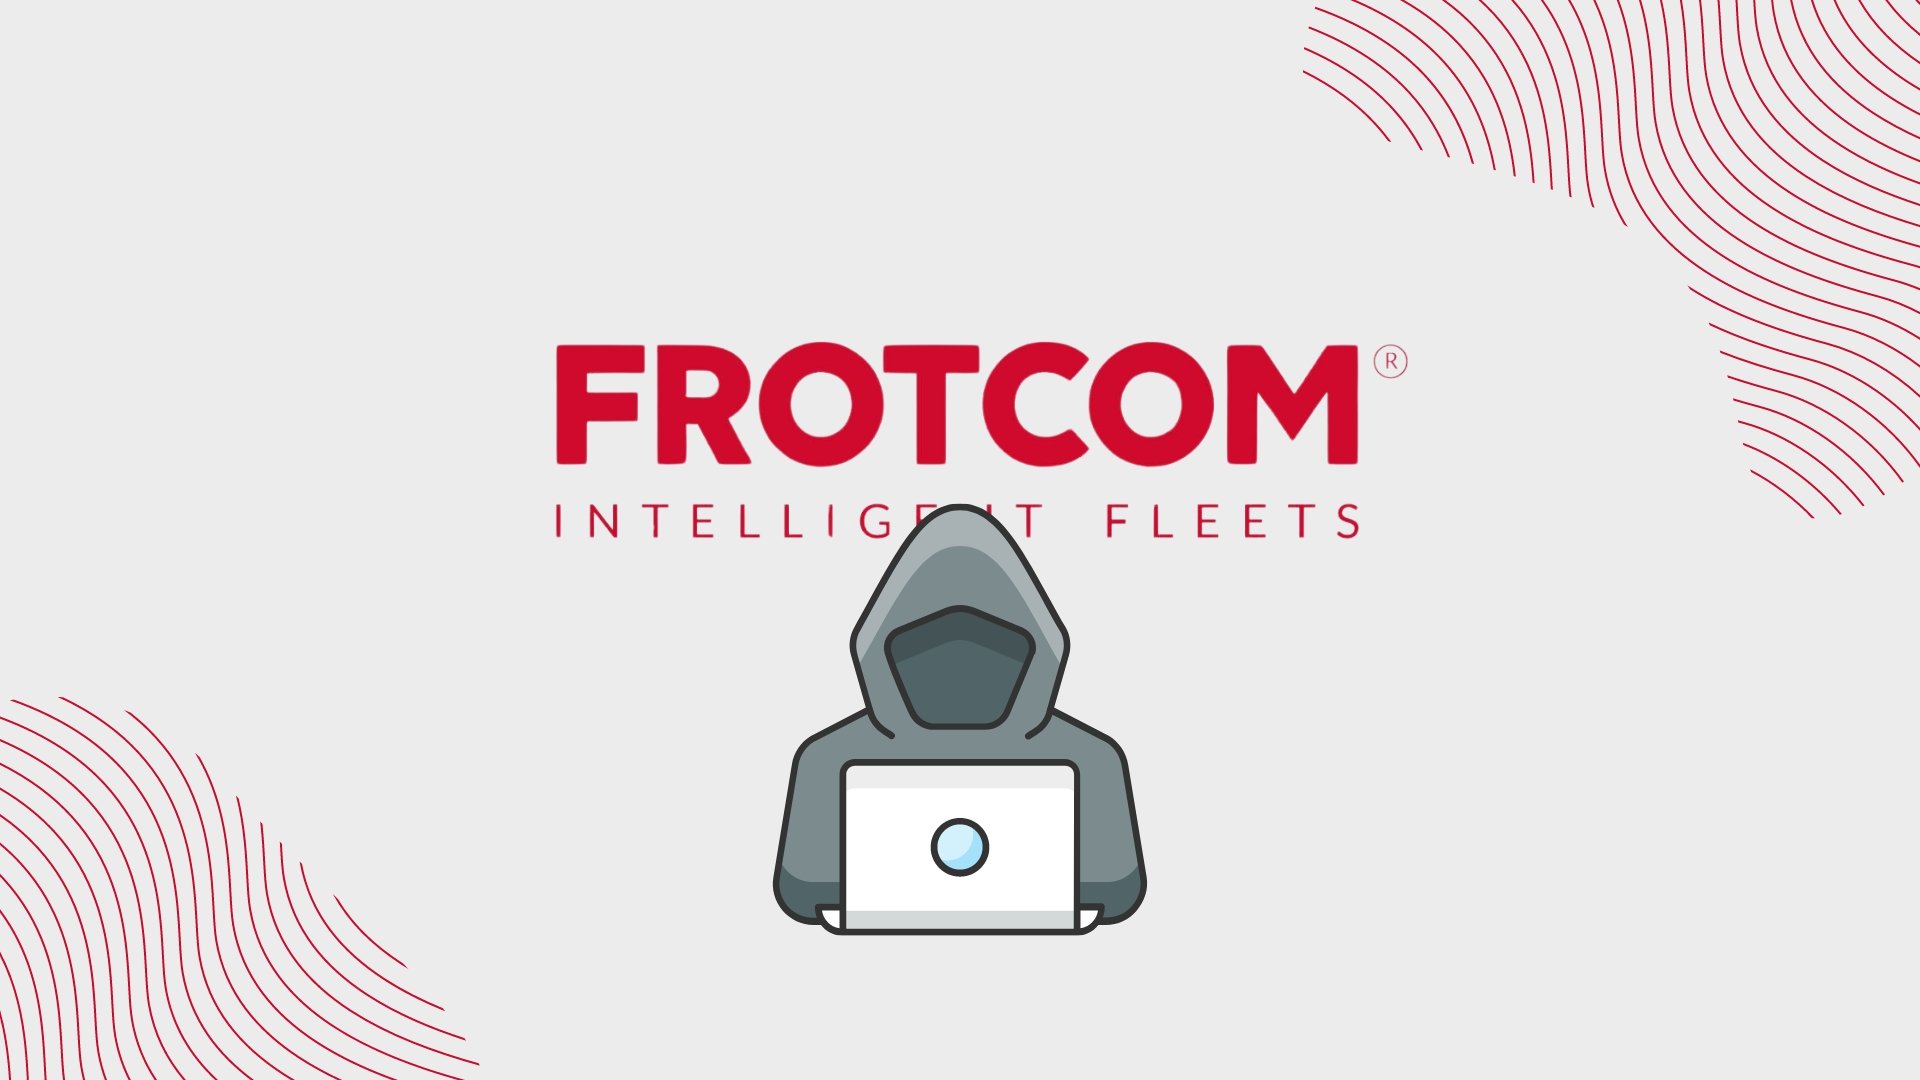 Dados da empresa Frotcom alegadamente à venda na dark web